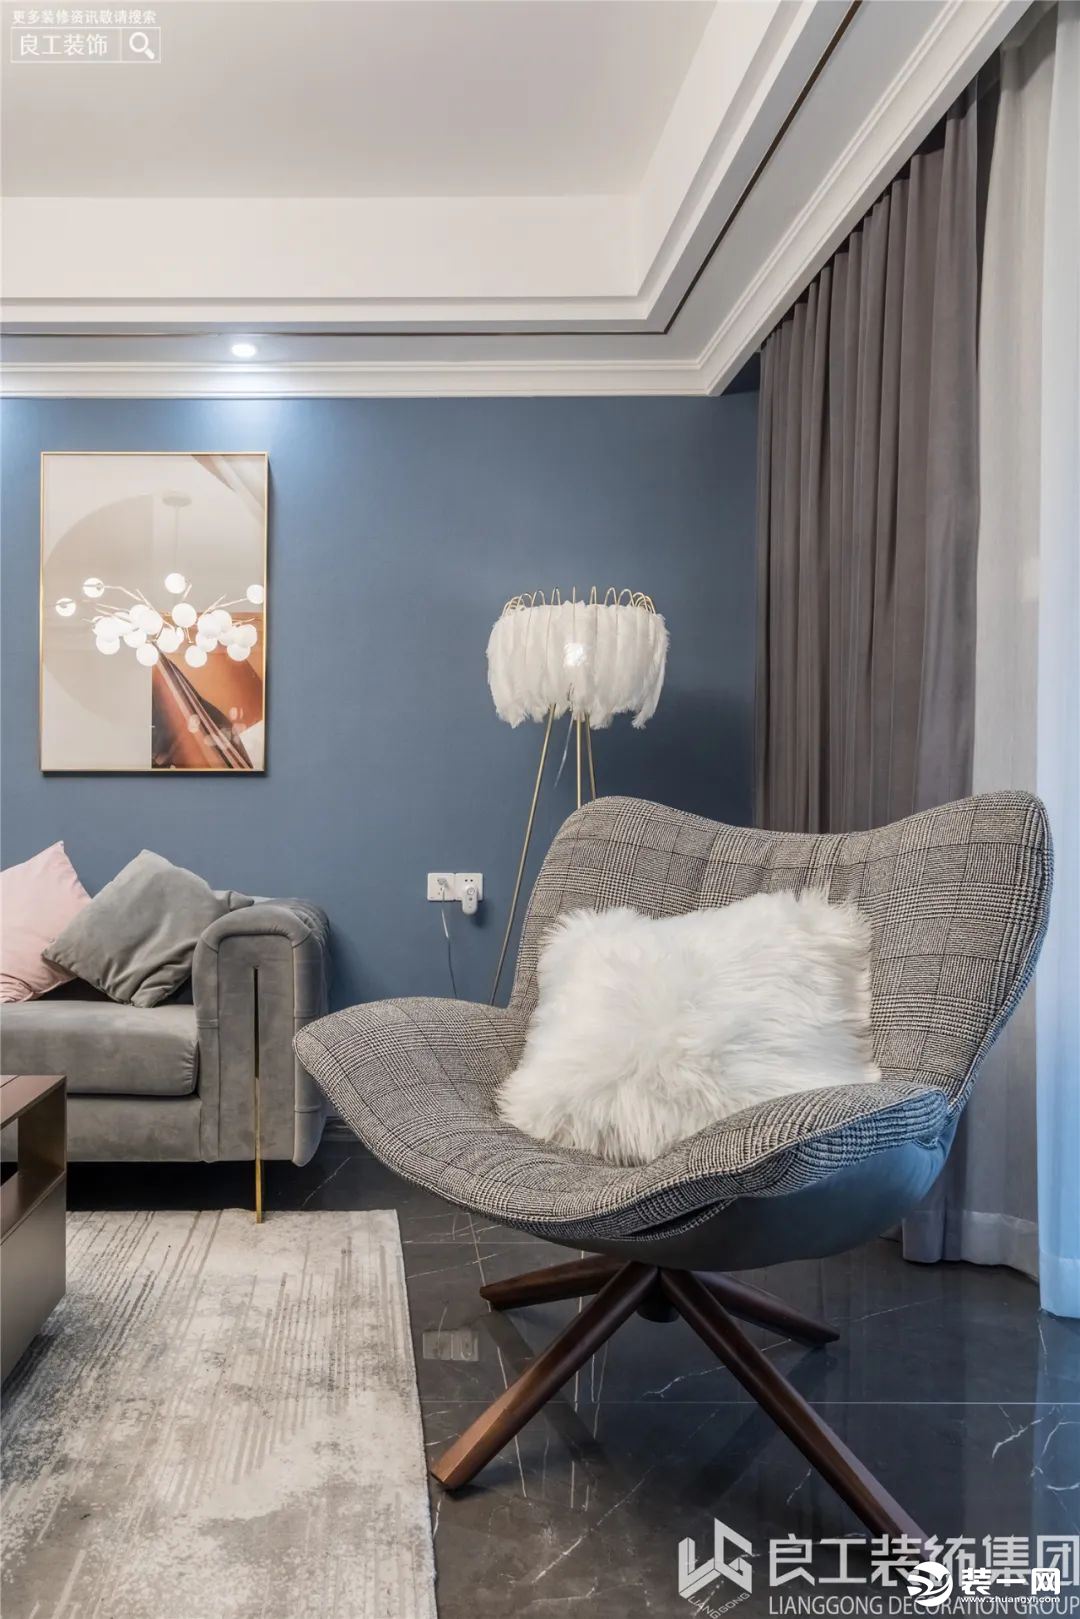 雾霾蓝是时下比较流行的色彩，将整面墙设计成沉稳的雾霾纯色，再通过抱枕等软装来丰富色彩，进行空间的填充